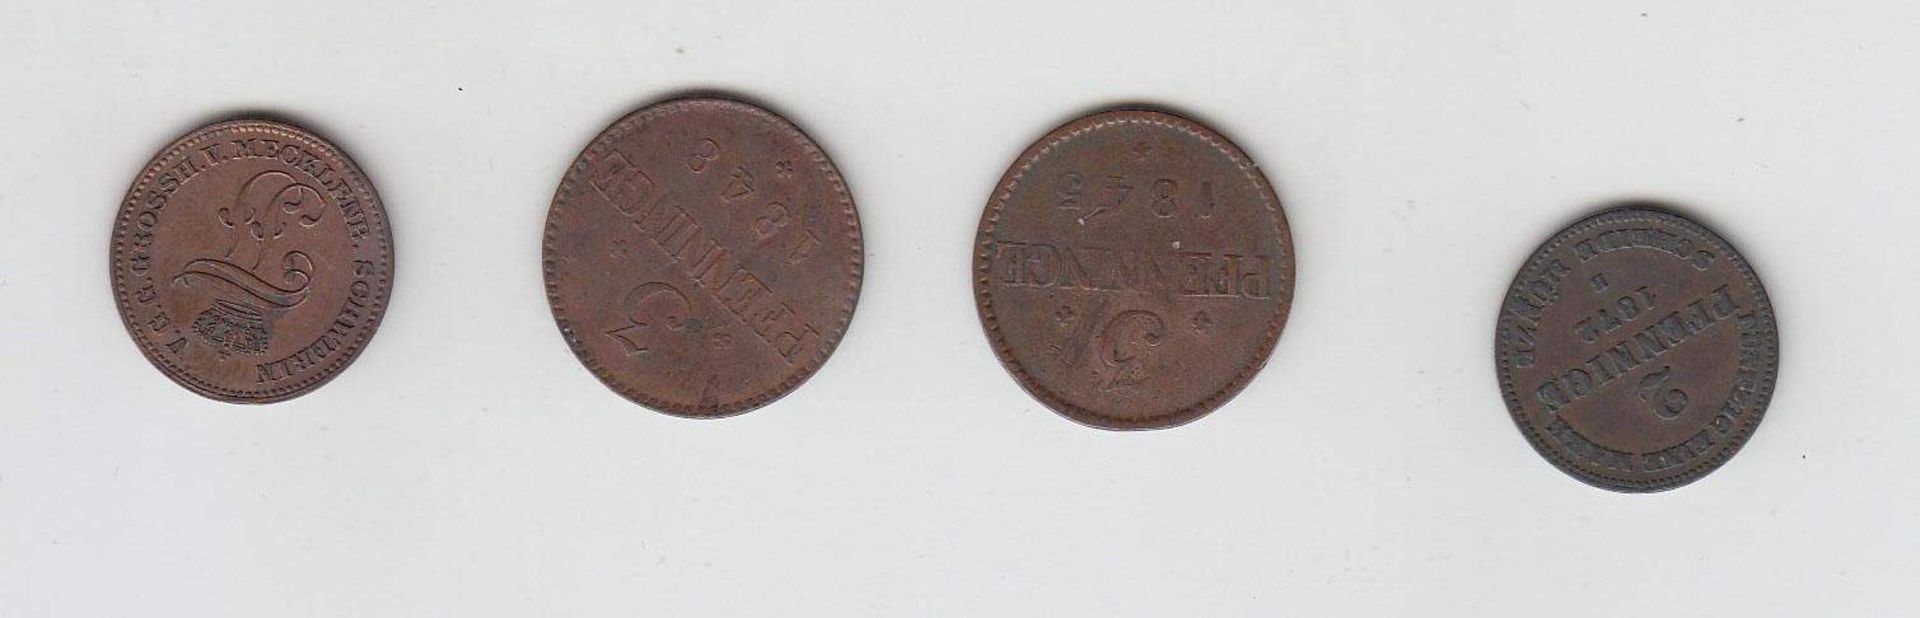 4 MünzenMecklenburg Schwerin 1845 - 1872, KupferAufrufpreis: 10 EUR - Bild 2 aus 2